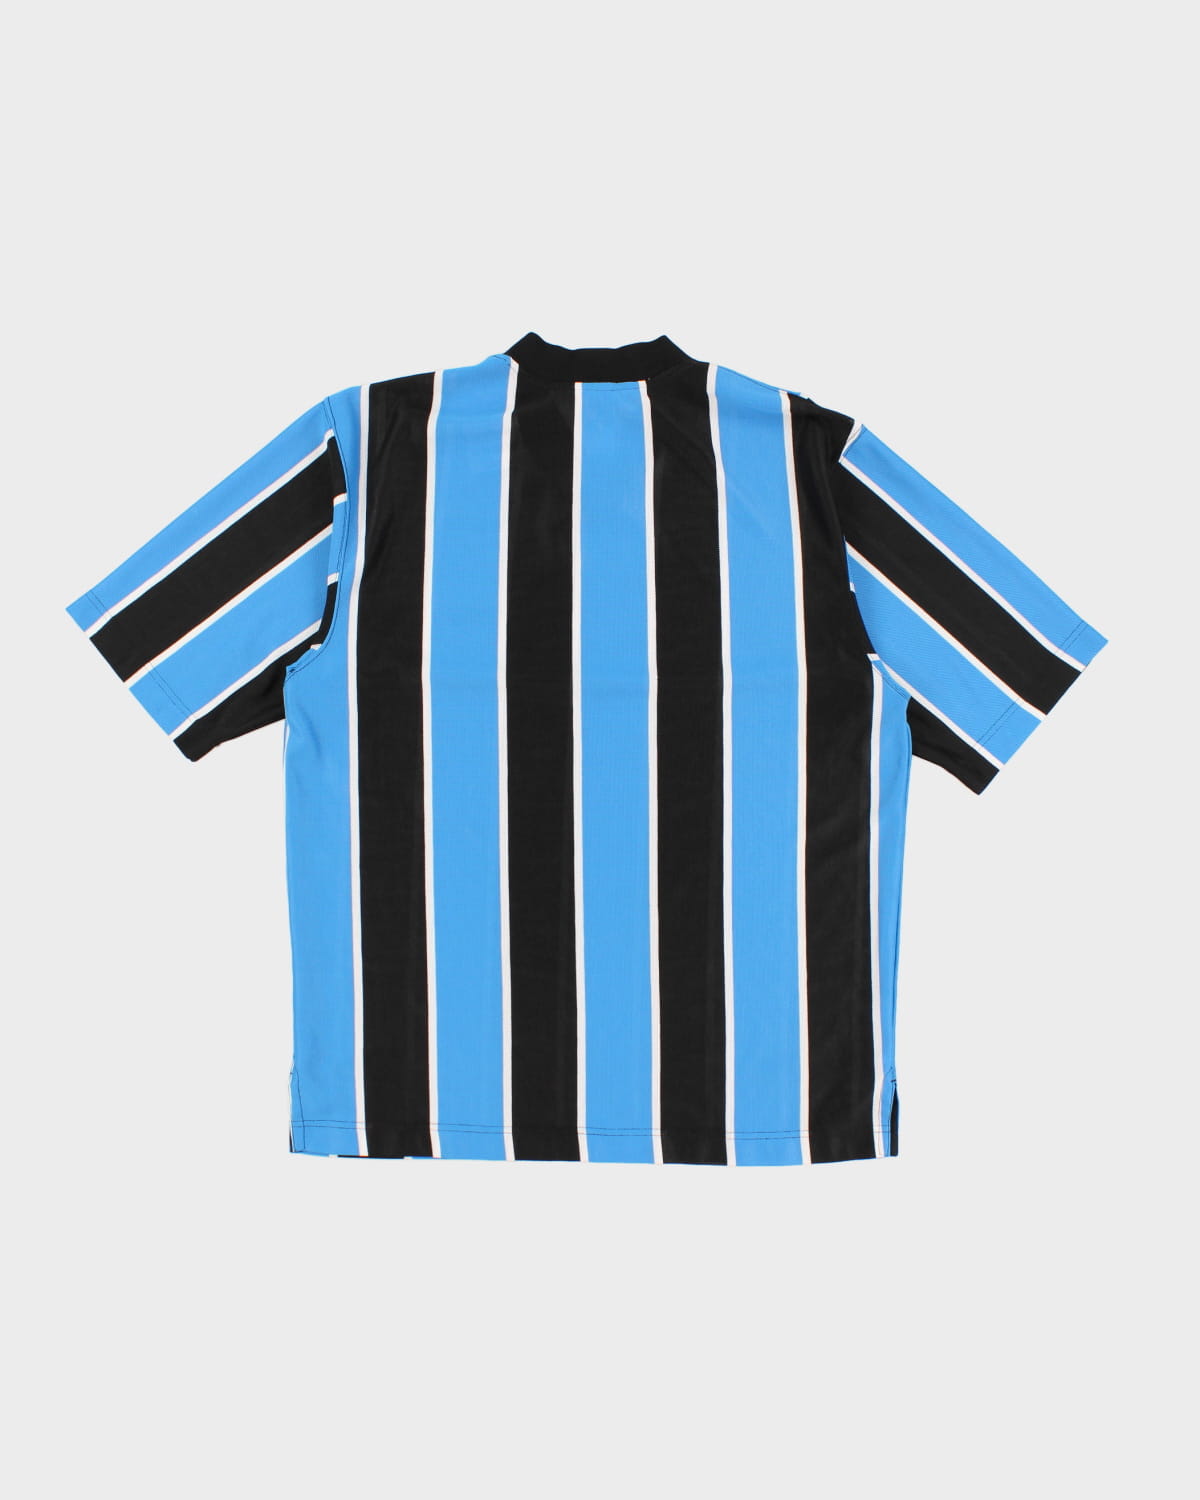 Vintage 90s Nike Football Shirt - M